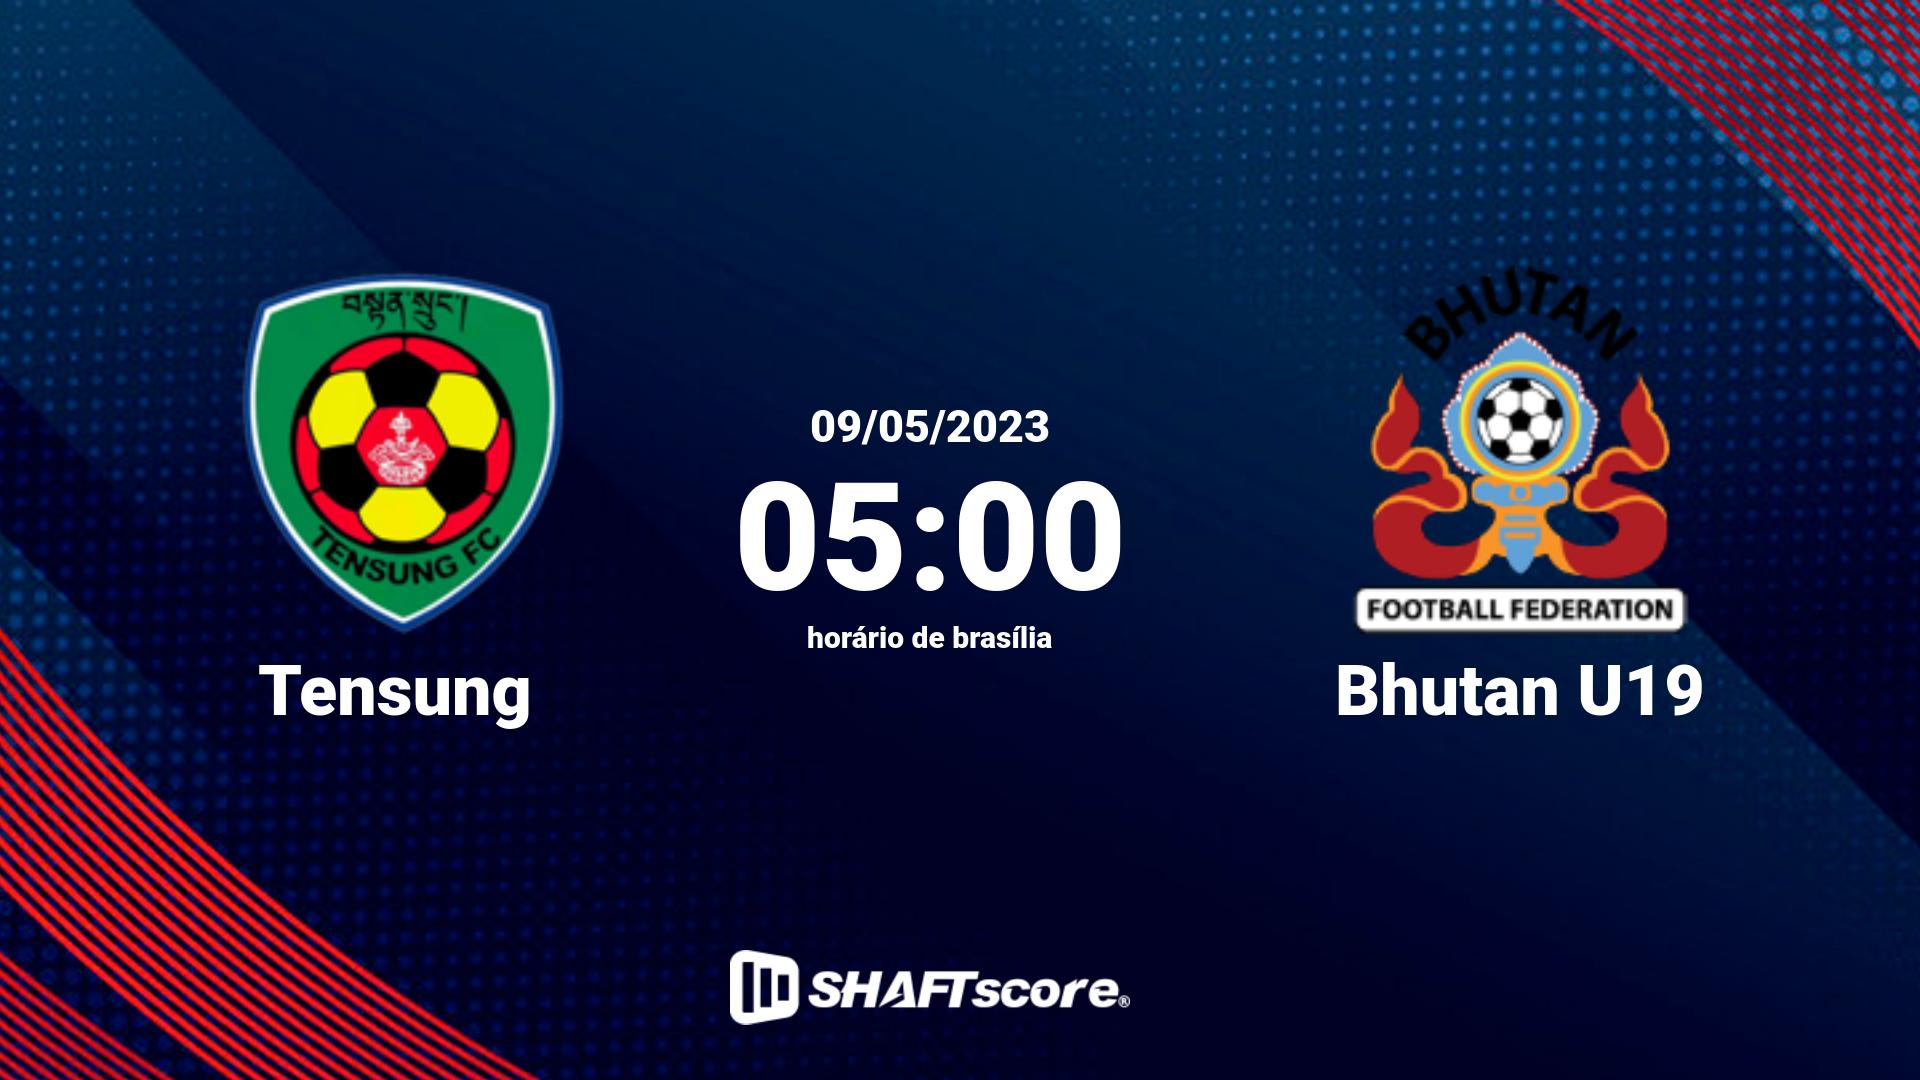 Estatísticas do jogo Tensung vs Bhutan U19 09.05 05:00